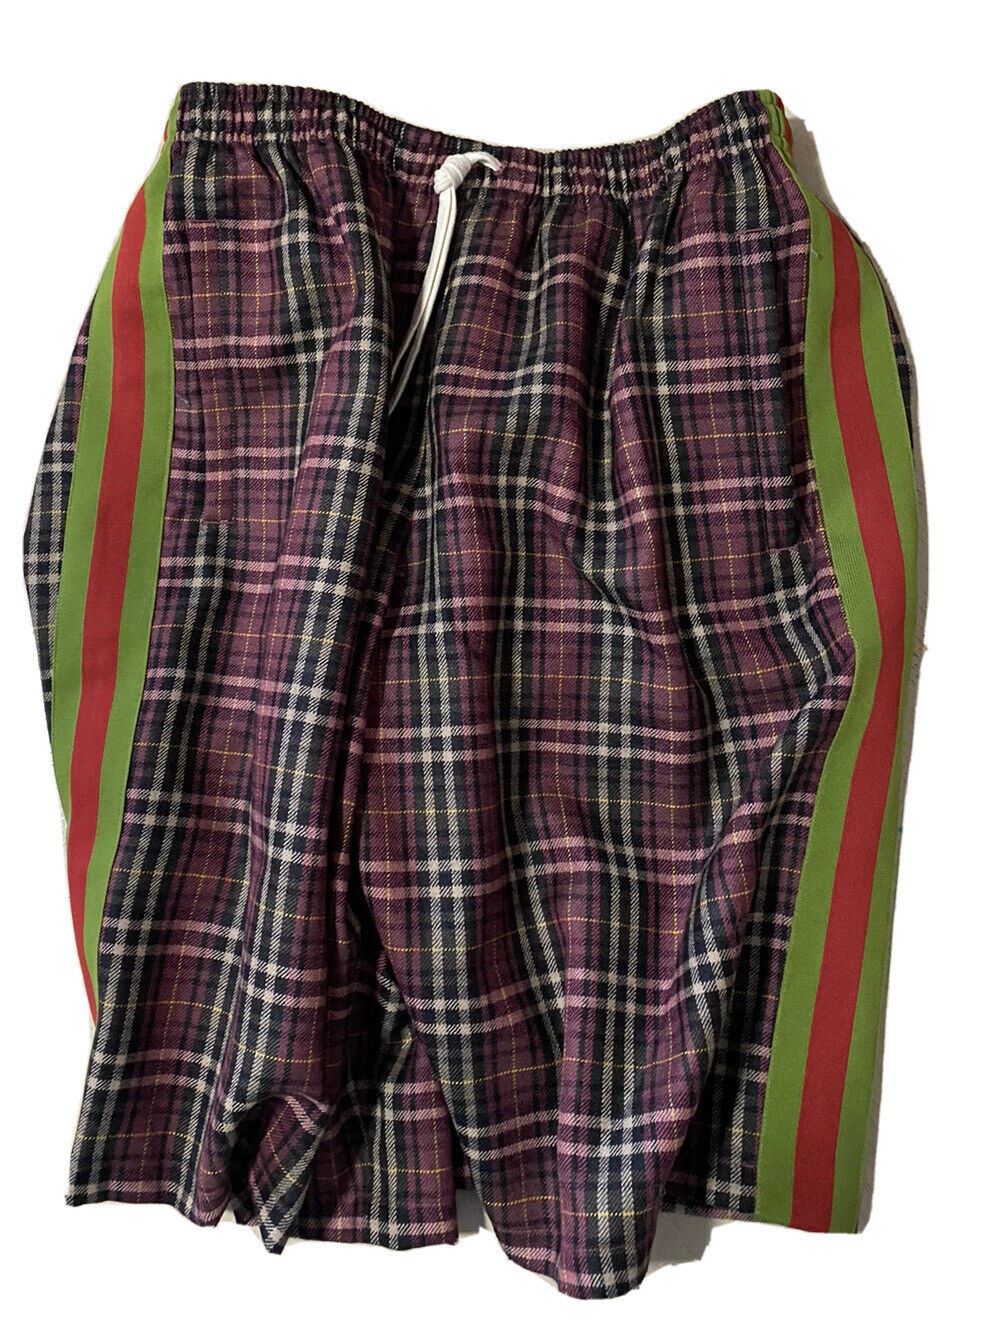 NWT $1400 Мужские брюки Gucci поверх корзины Короткие виноградные/черные Размер 32 США/48 ЕС